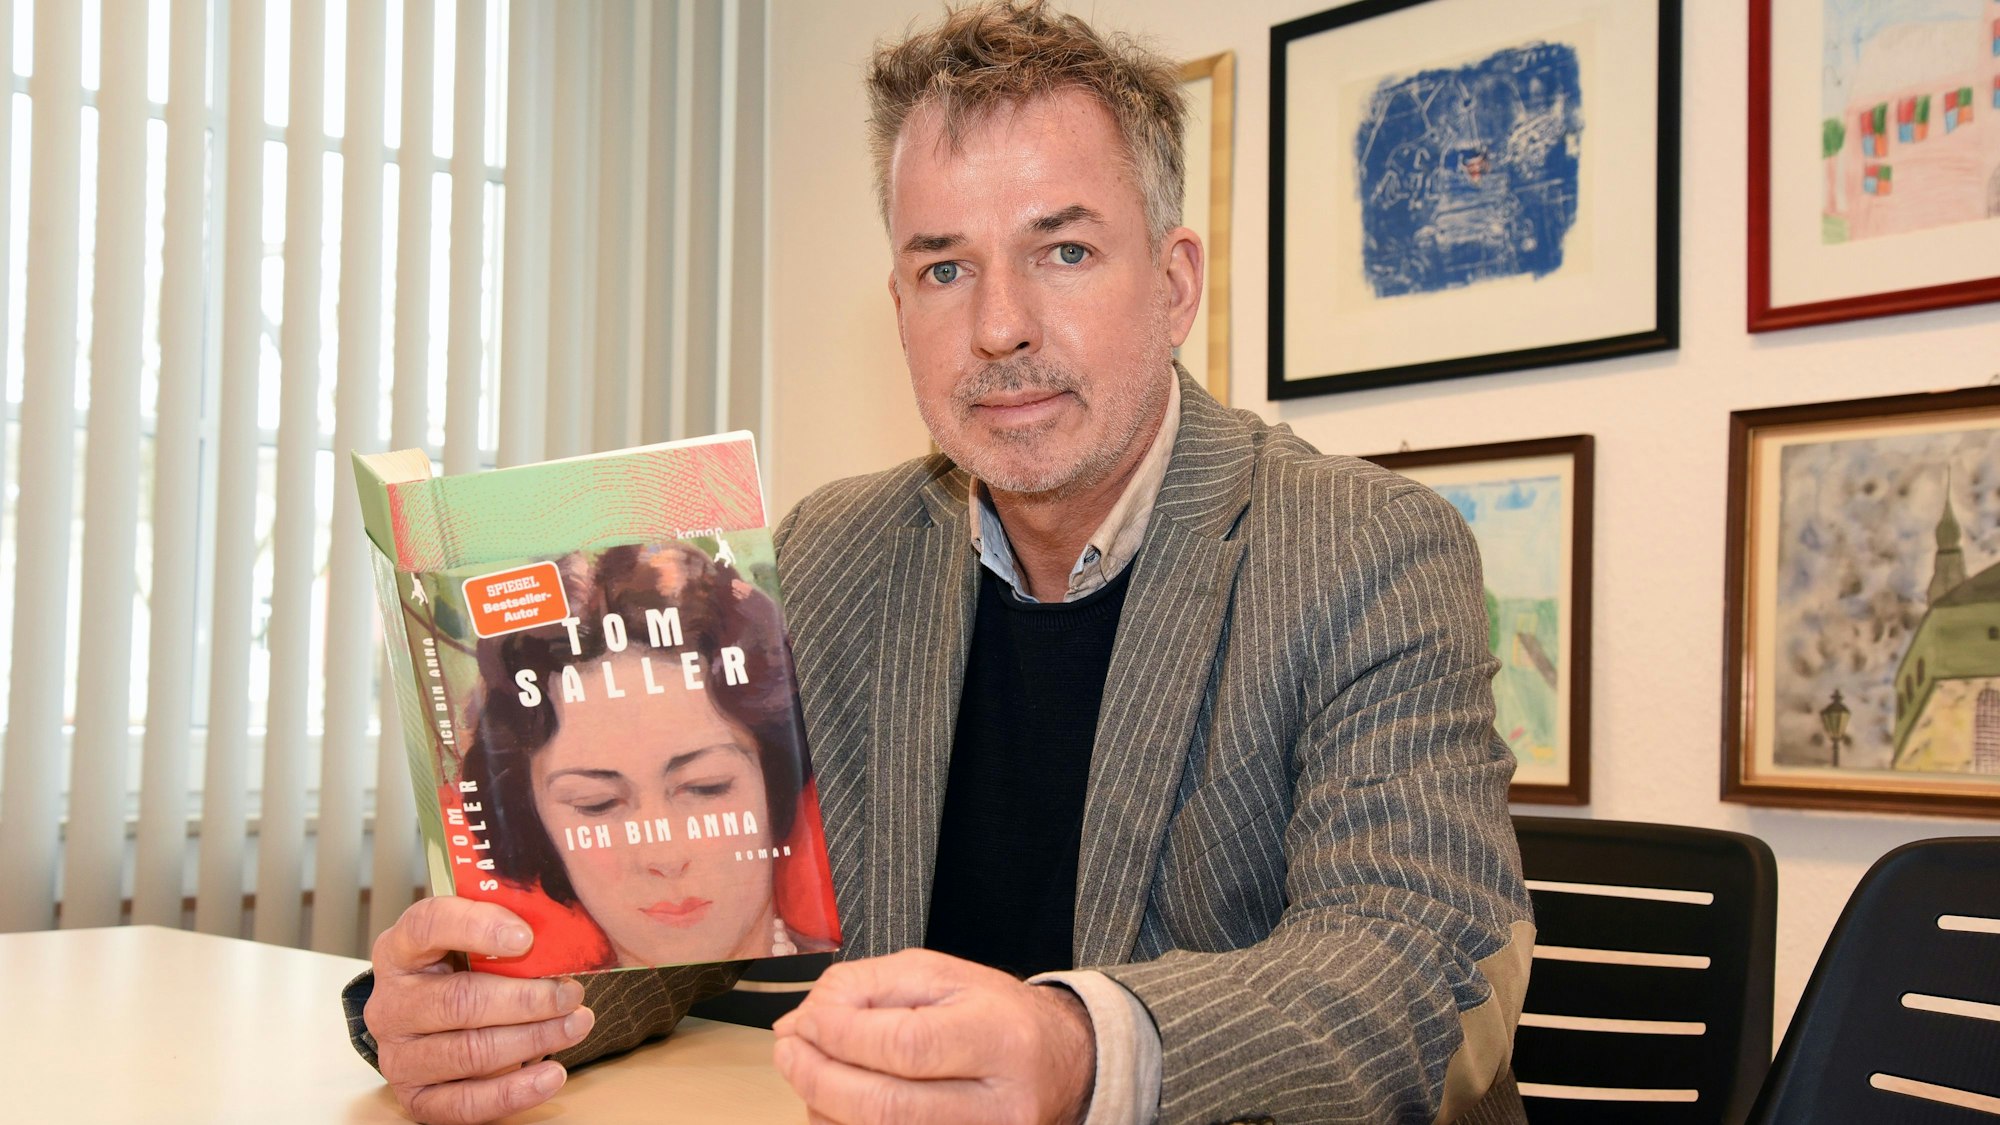 Das Foto zeigt den Wipperfürther Autor Tom Saller, in der Hand hält er seinen neuen Roman "Ich bin Anna".